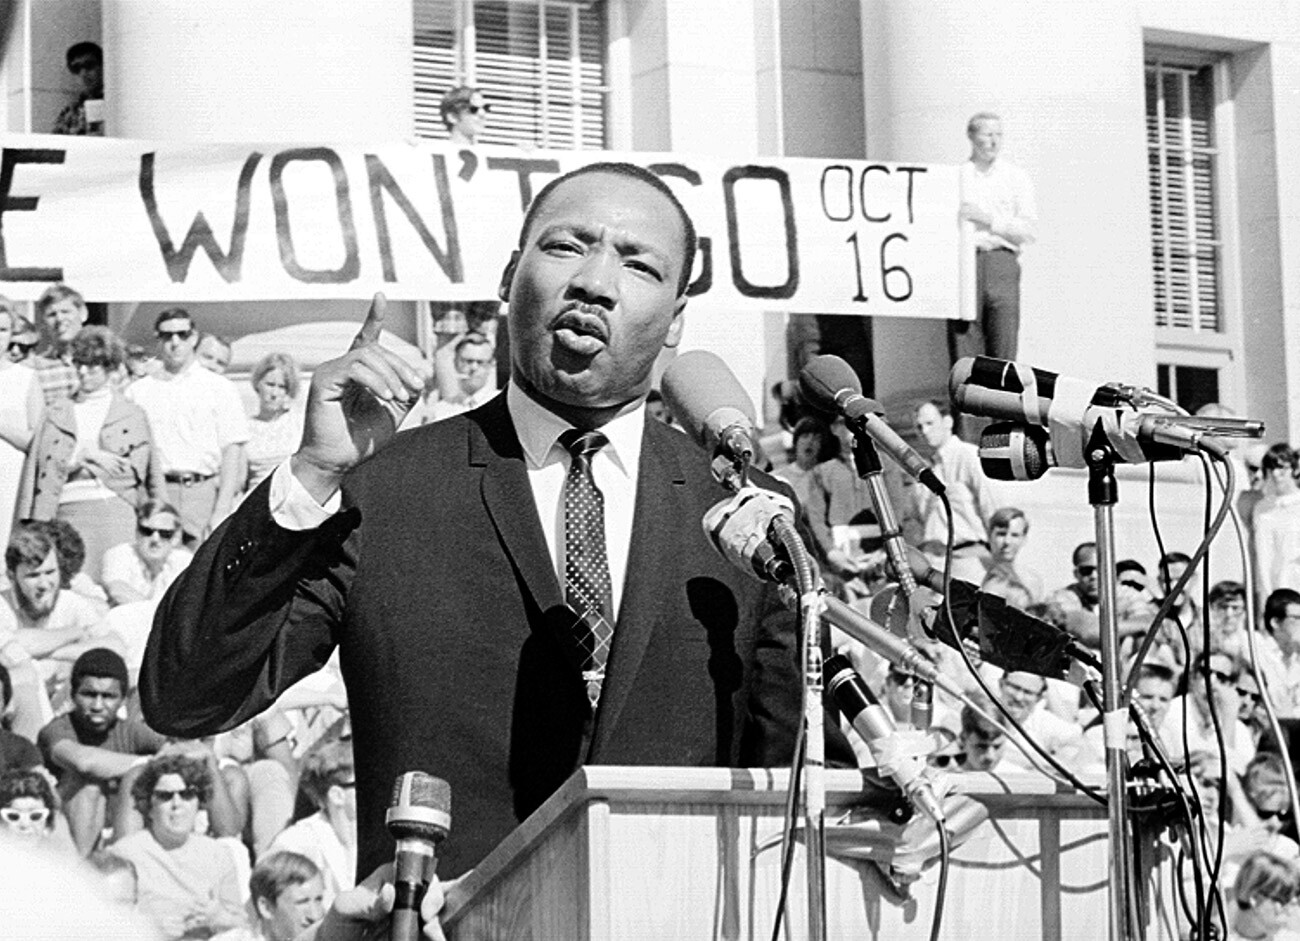 Der Bürgerrechtsführer Martin Luther King Jr. hält am 17. Mai 1967 eine Rede vor etwa 7.000 Menschen in Berkeley, Kalifornien.